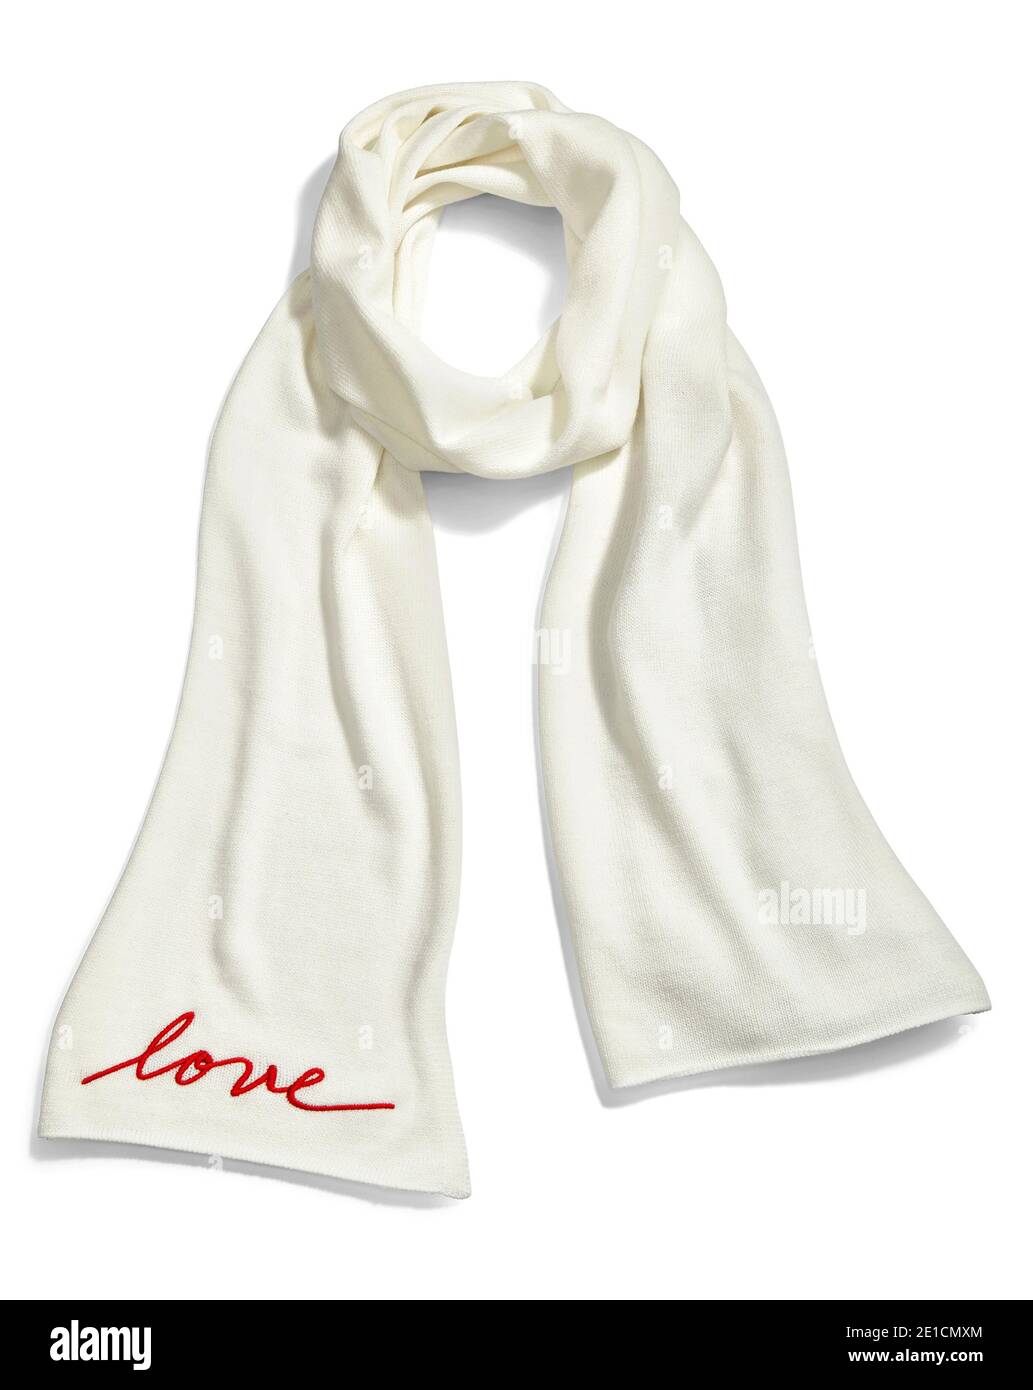 Écharpe tricotée blanche avec le mot brodé « Love » photographié sur un arrière-plan blanc Banque D'Images